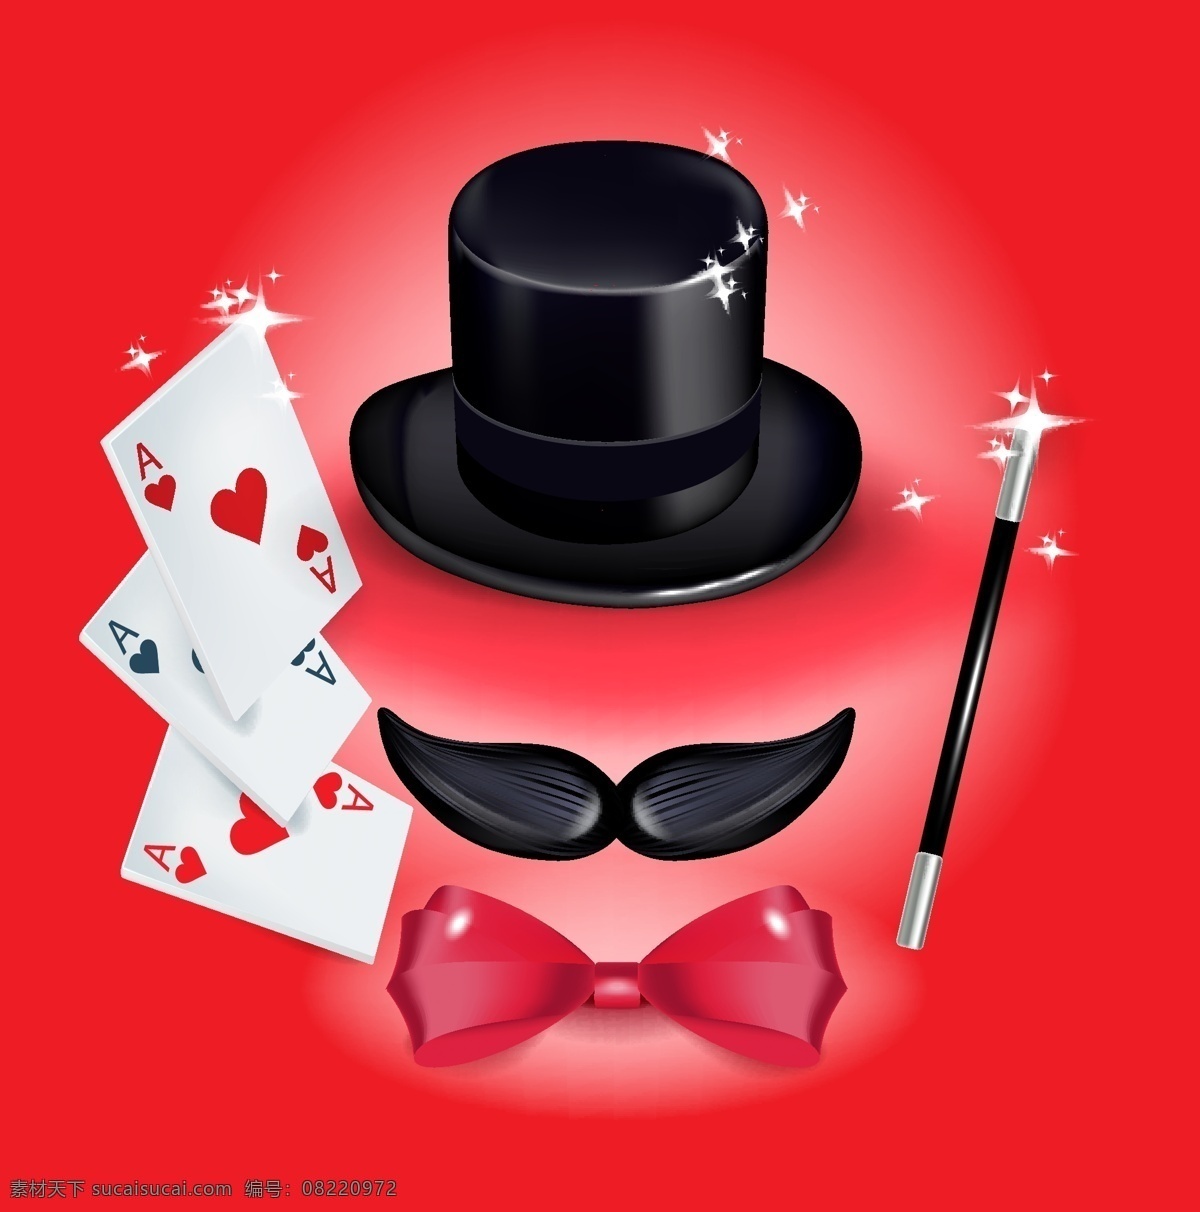 魔术 表演 矢量 模板下载 魔术背景 魔术师 魔术表演 魔术帽子 魔术道具 魔术棒 扑克牌 胡子 领结 生活百科 矢量素材 红色